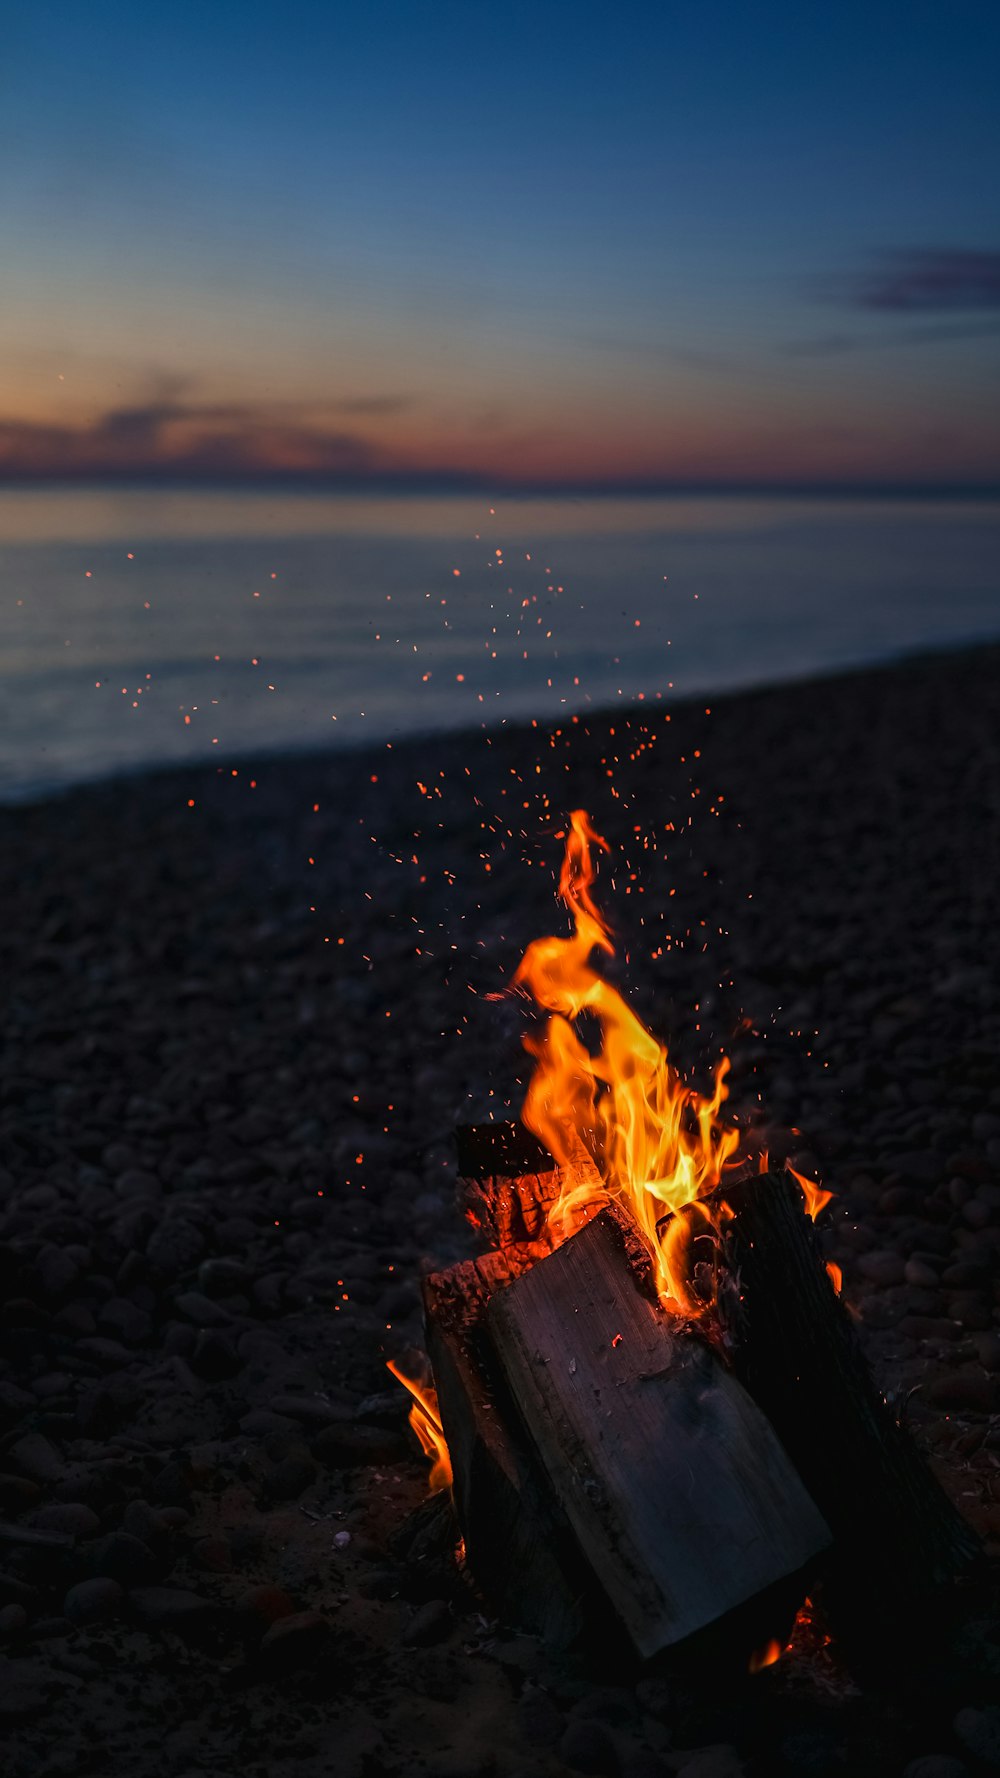 Feuer auf braunem Sand in der Nähe von Gewässern während des Sonnenuntergangs